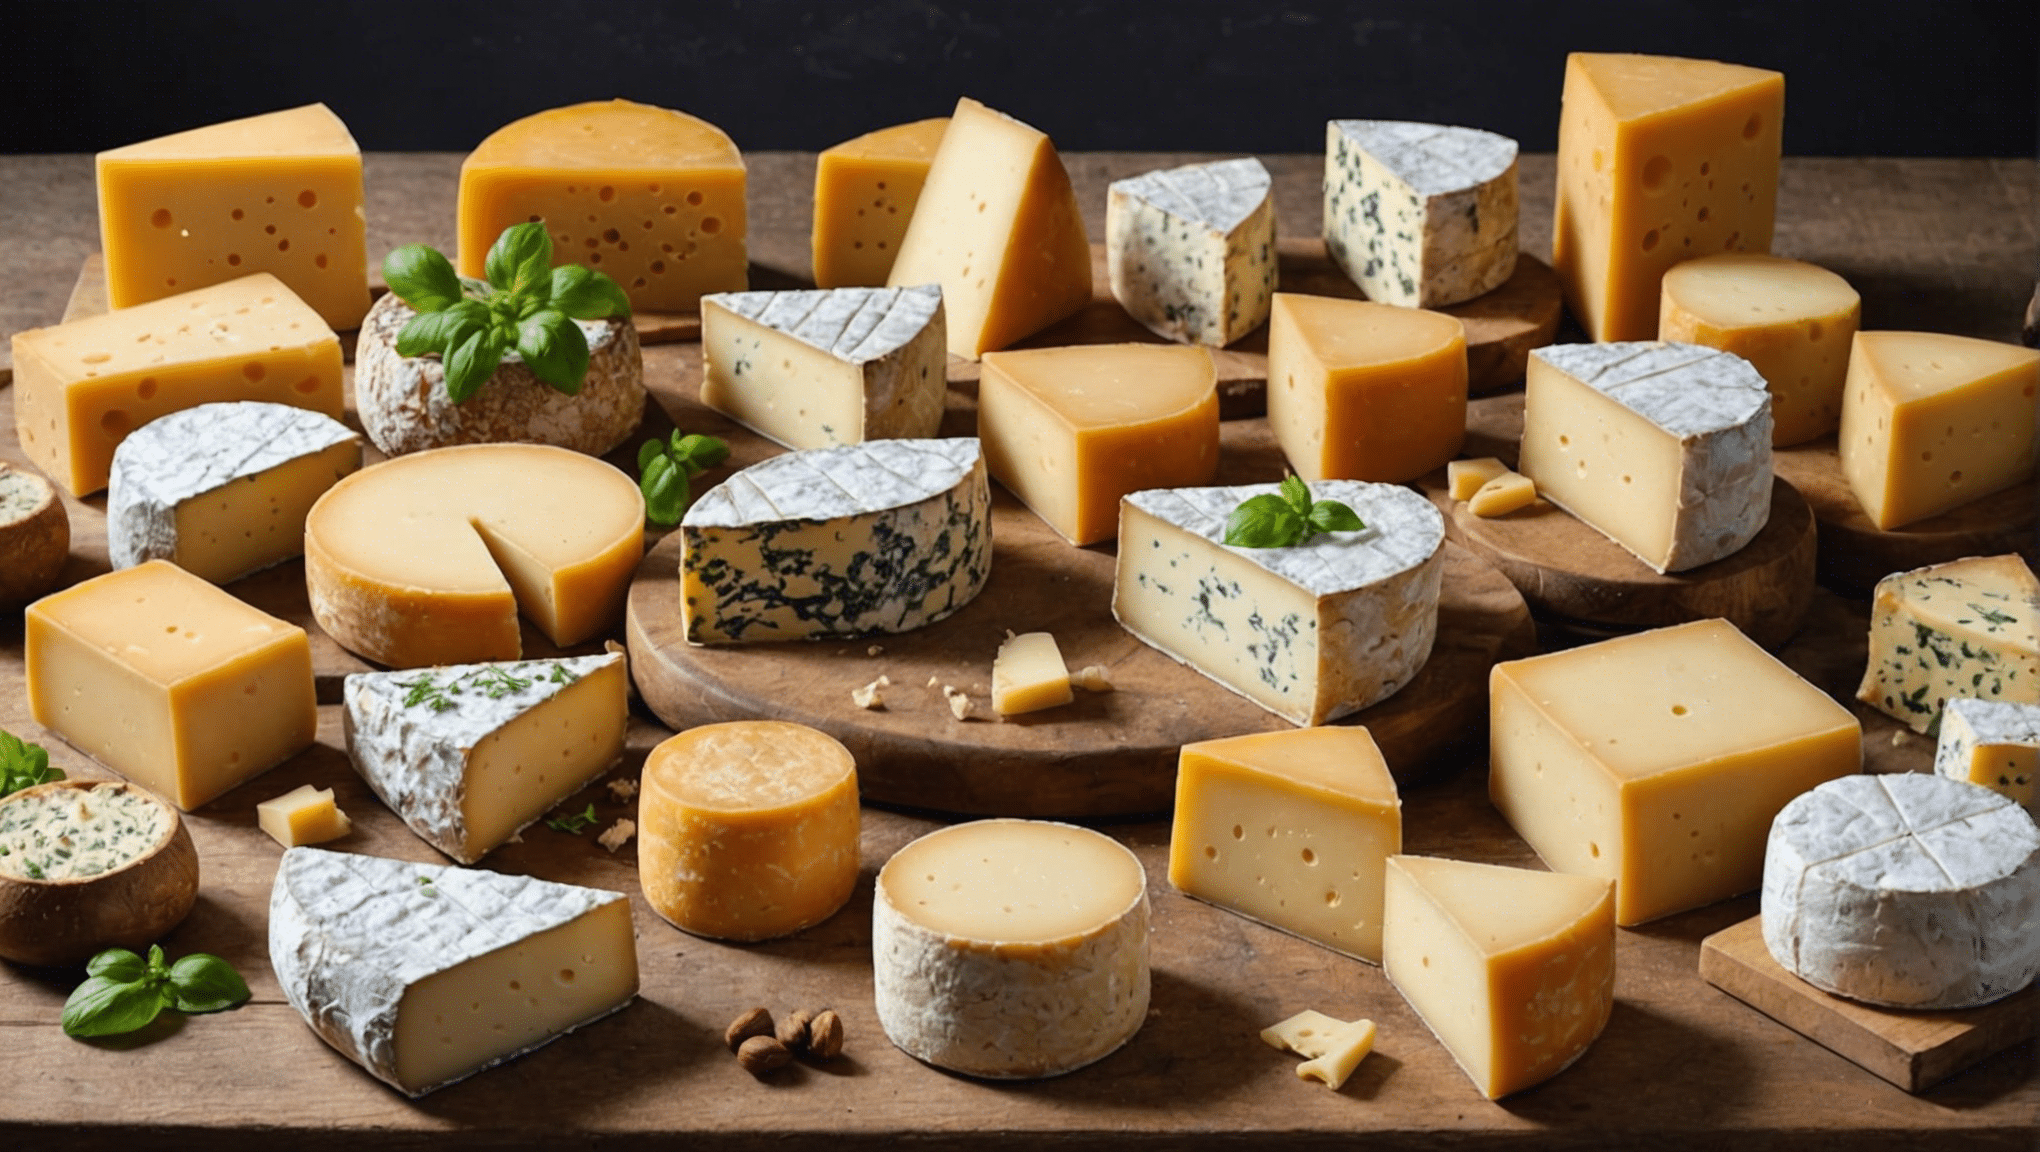 découvrez les fromages incontournables du monde entier et laissez-vous séduire par leur diversité et leurs saveurs uniques.